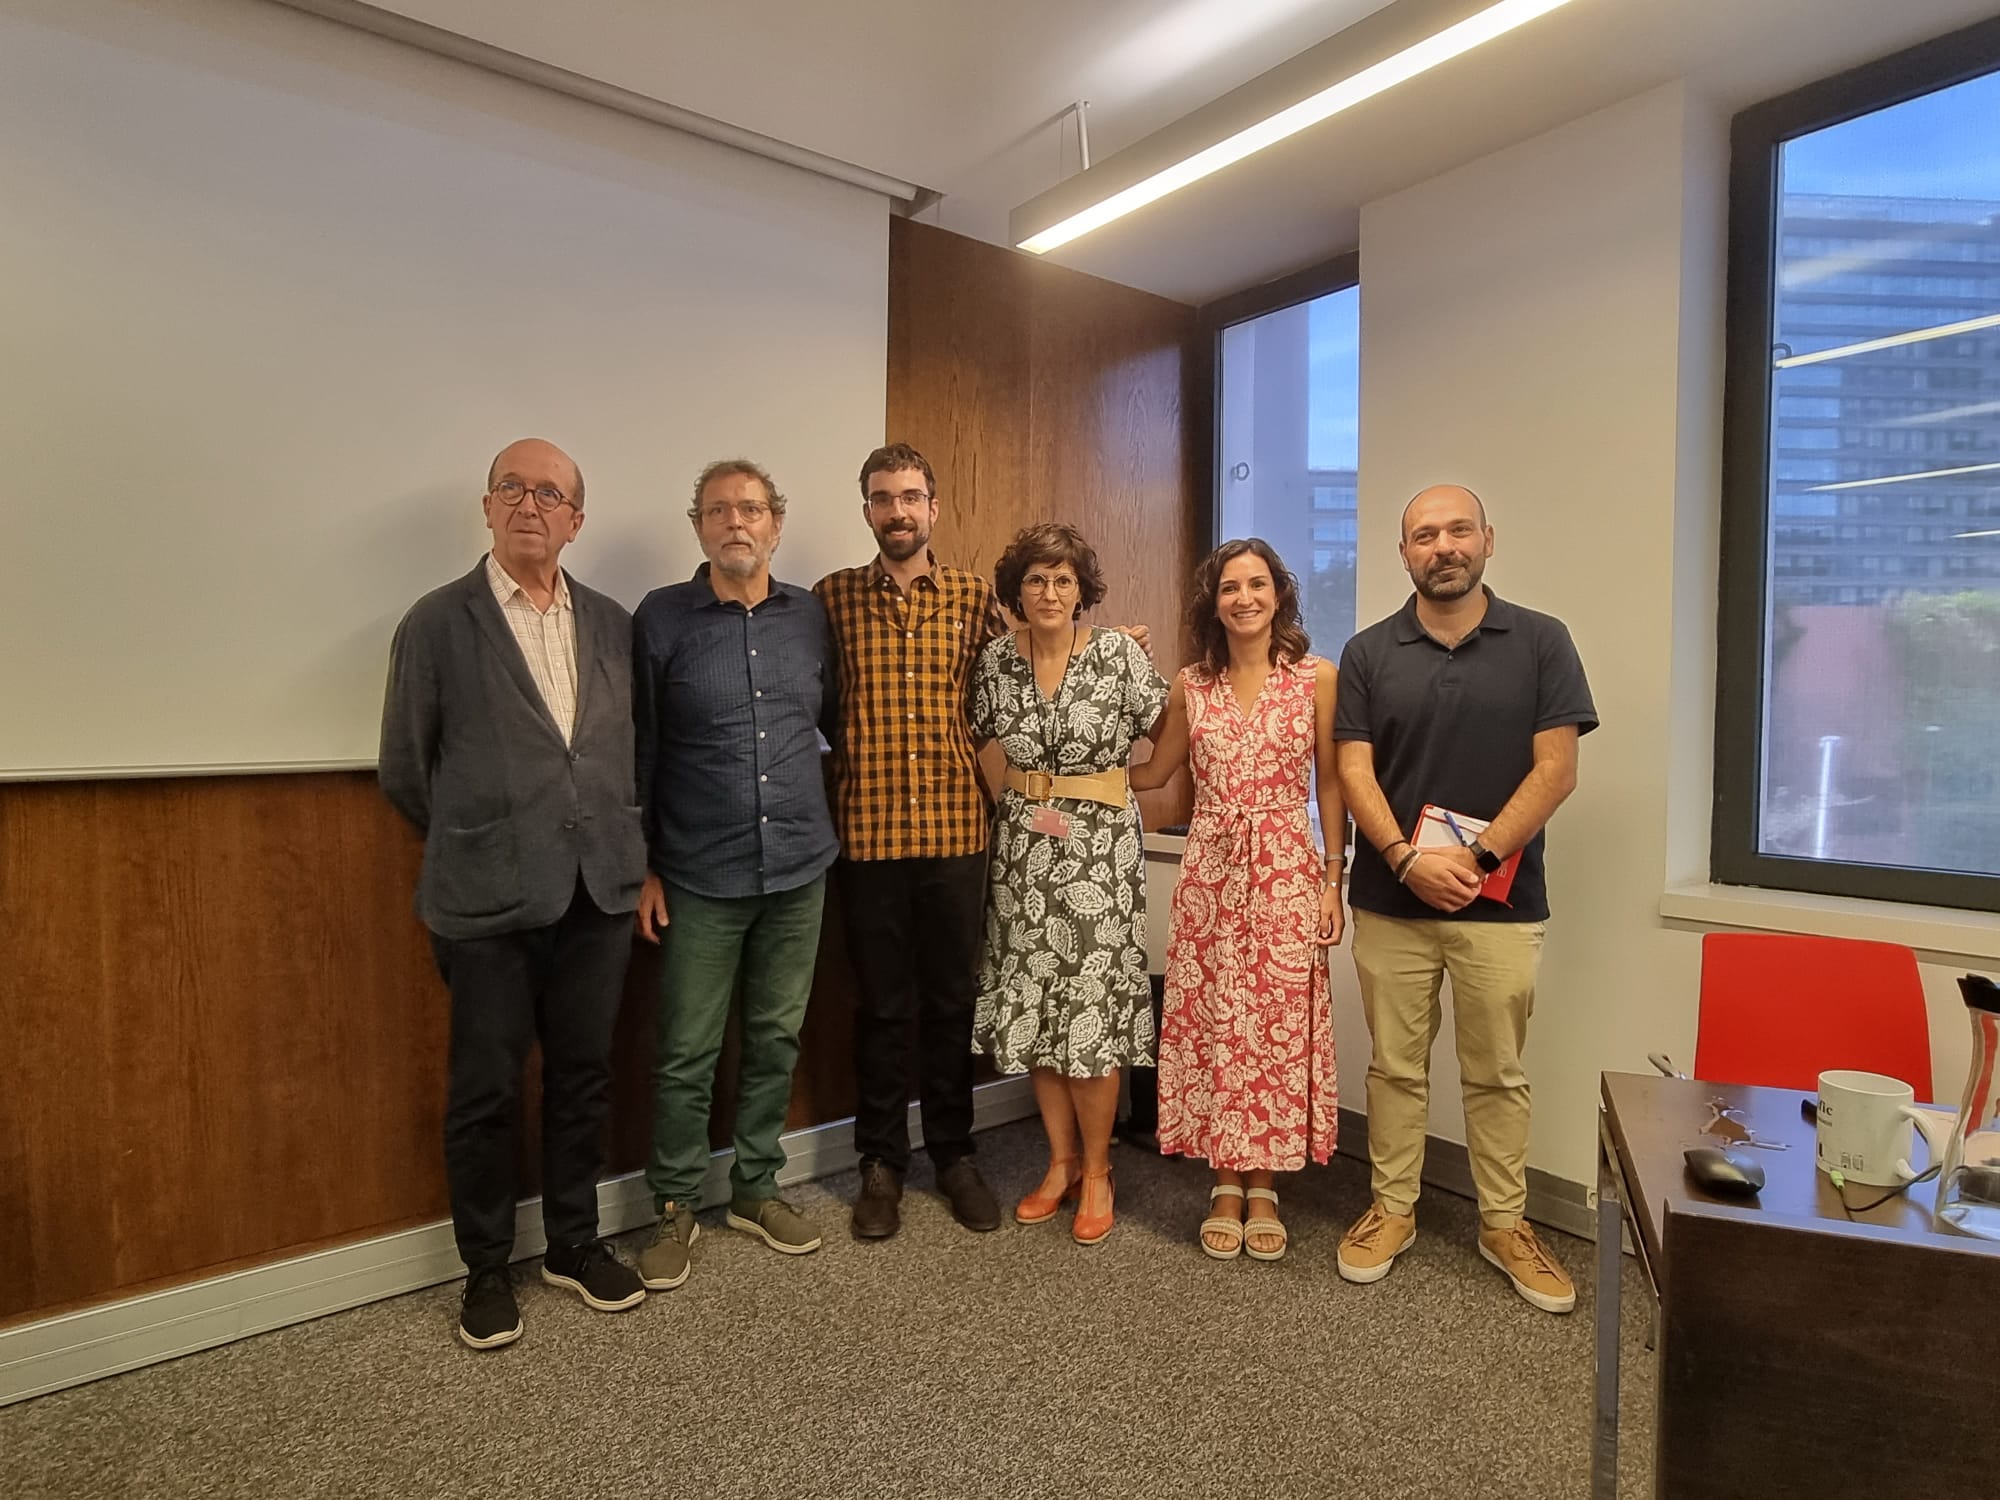 Eloi Camps Durban defensa la seva tesi doctoral sobre la premsa de proximitat cooperativa a Catalunya amb distinció cum laude